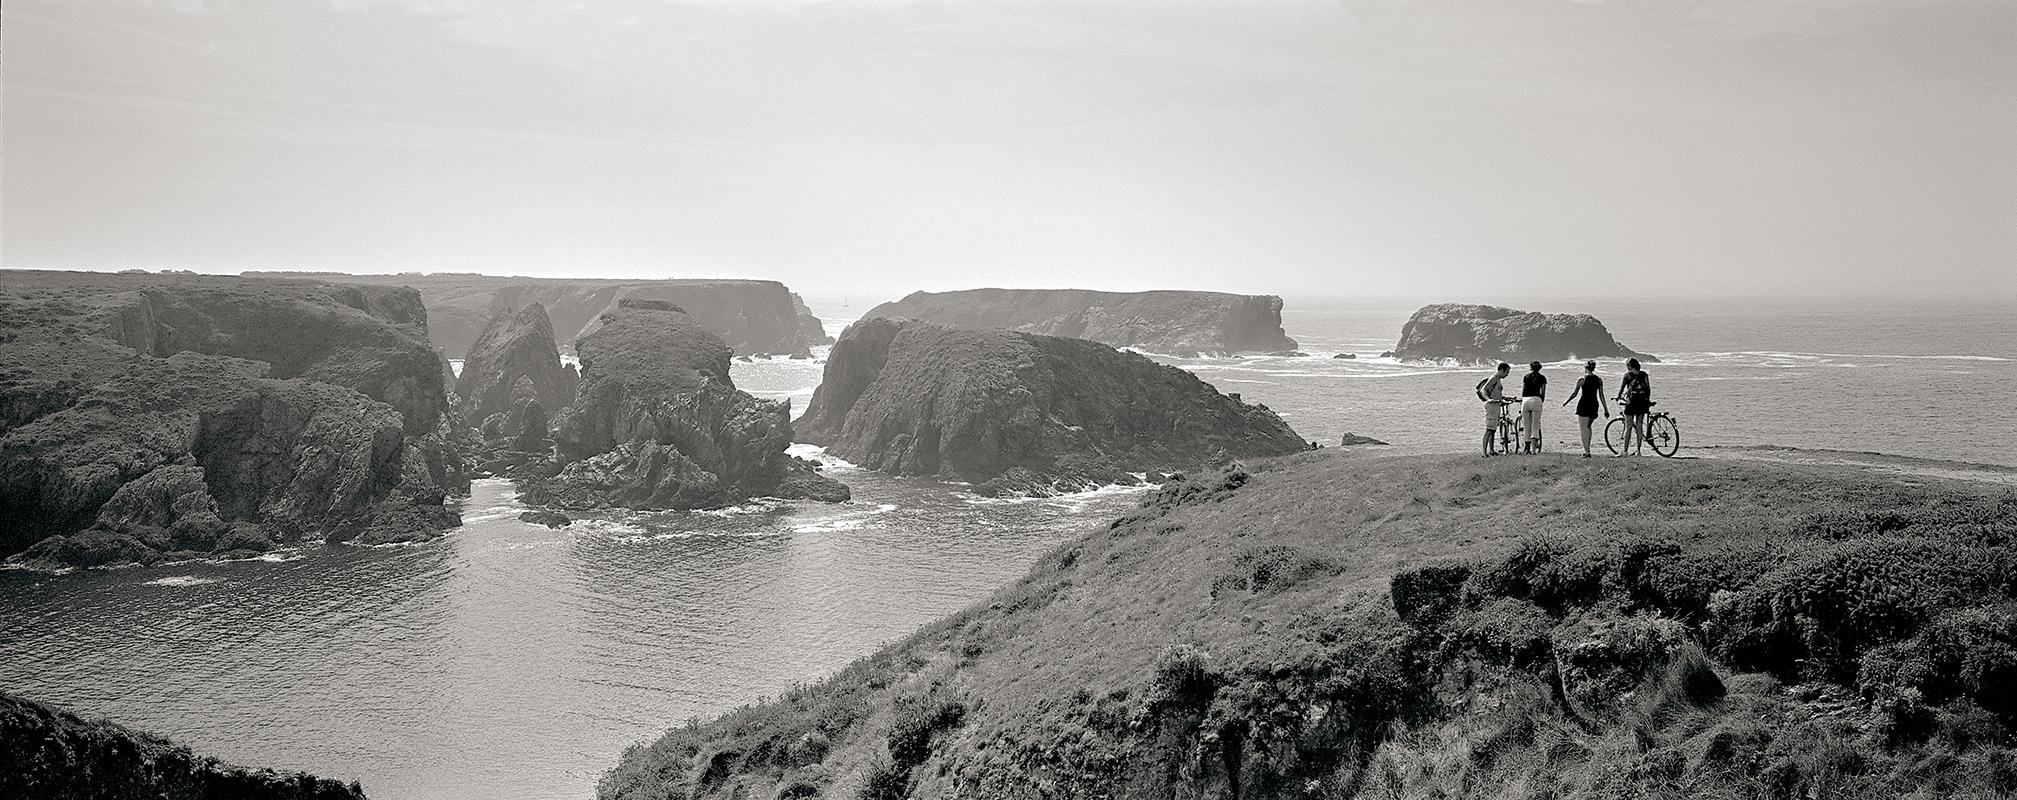 Panorama – Schwarz-Weiß-Fotografie, Druck in limitierter Auflage, Landschaft (Zeitgenössisch), Photograph, von Sam Thomas